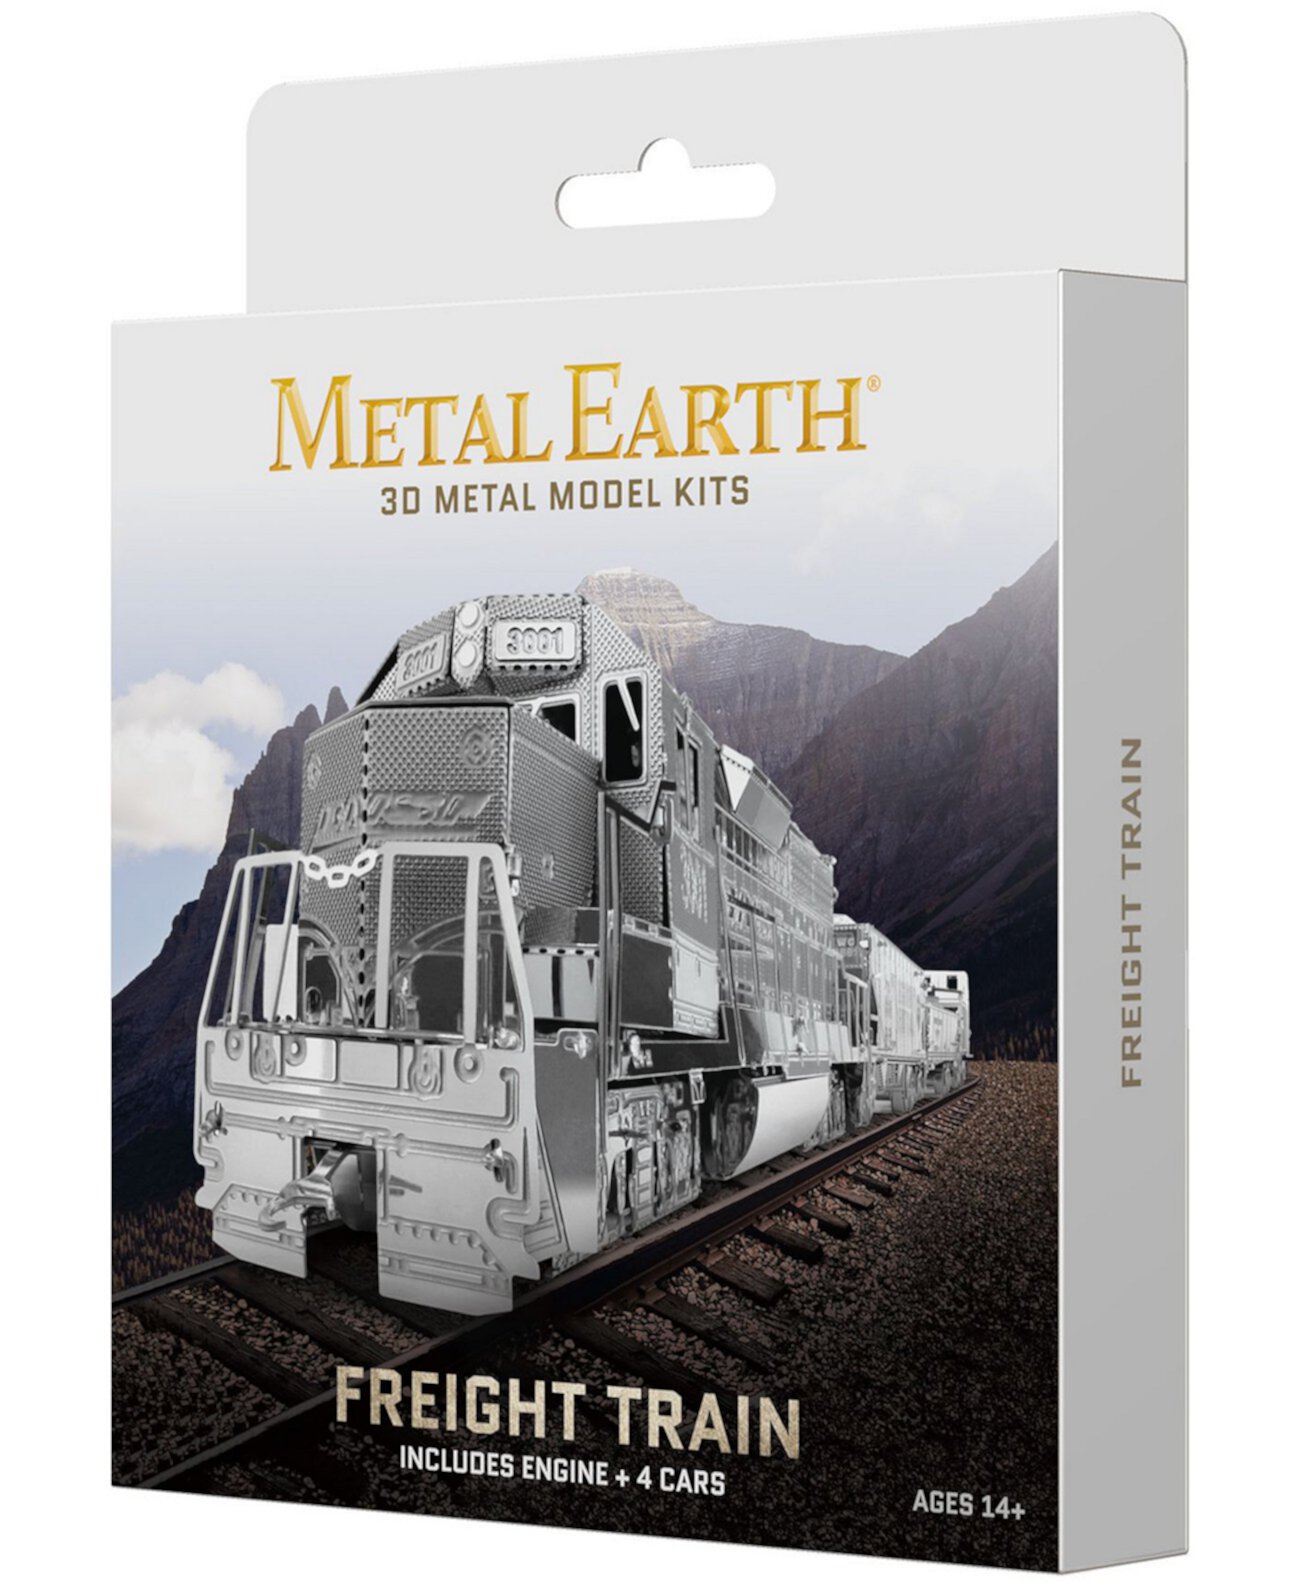 Металлическая Земля 3D Металлическая модель Комплект - Бокс-набор грузового поезда Fascinations